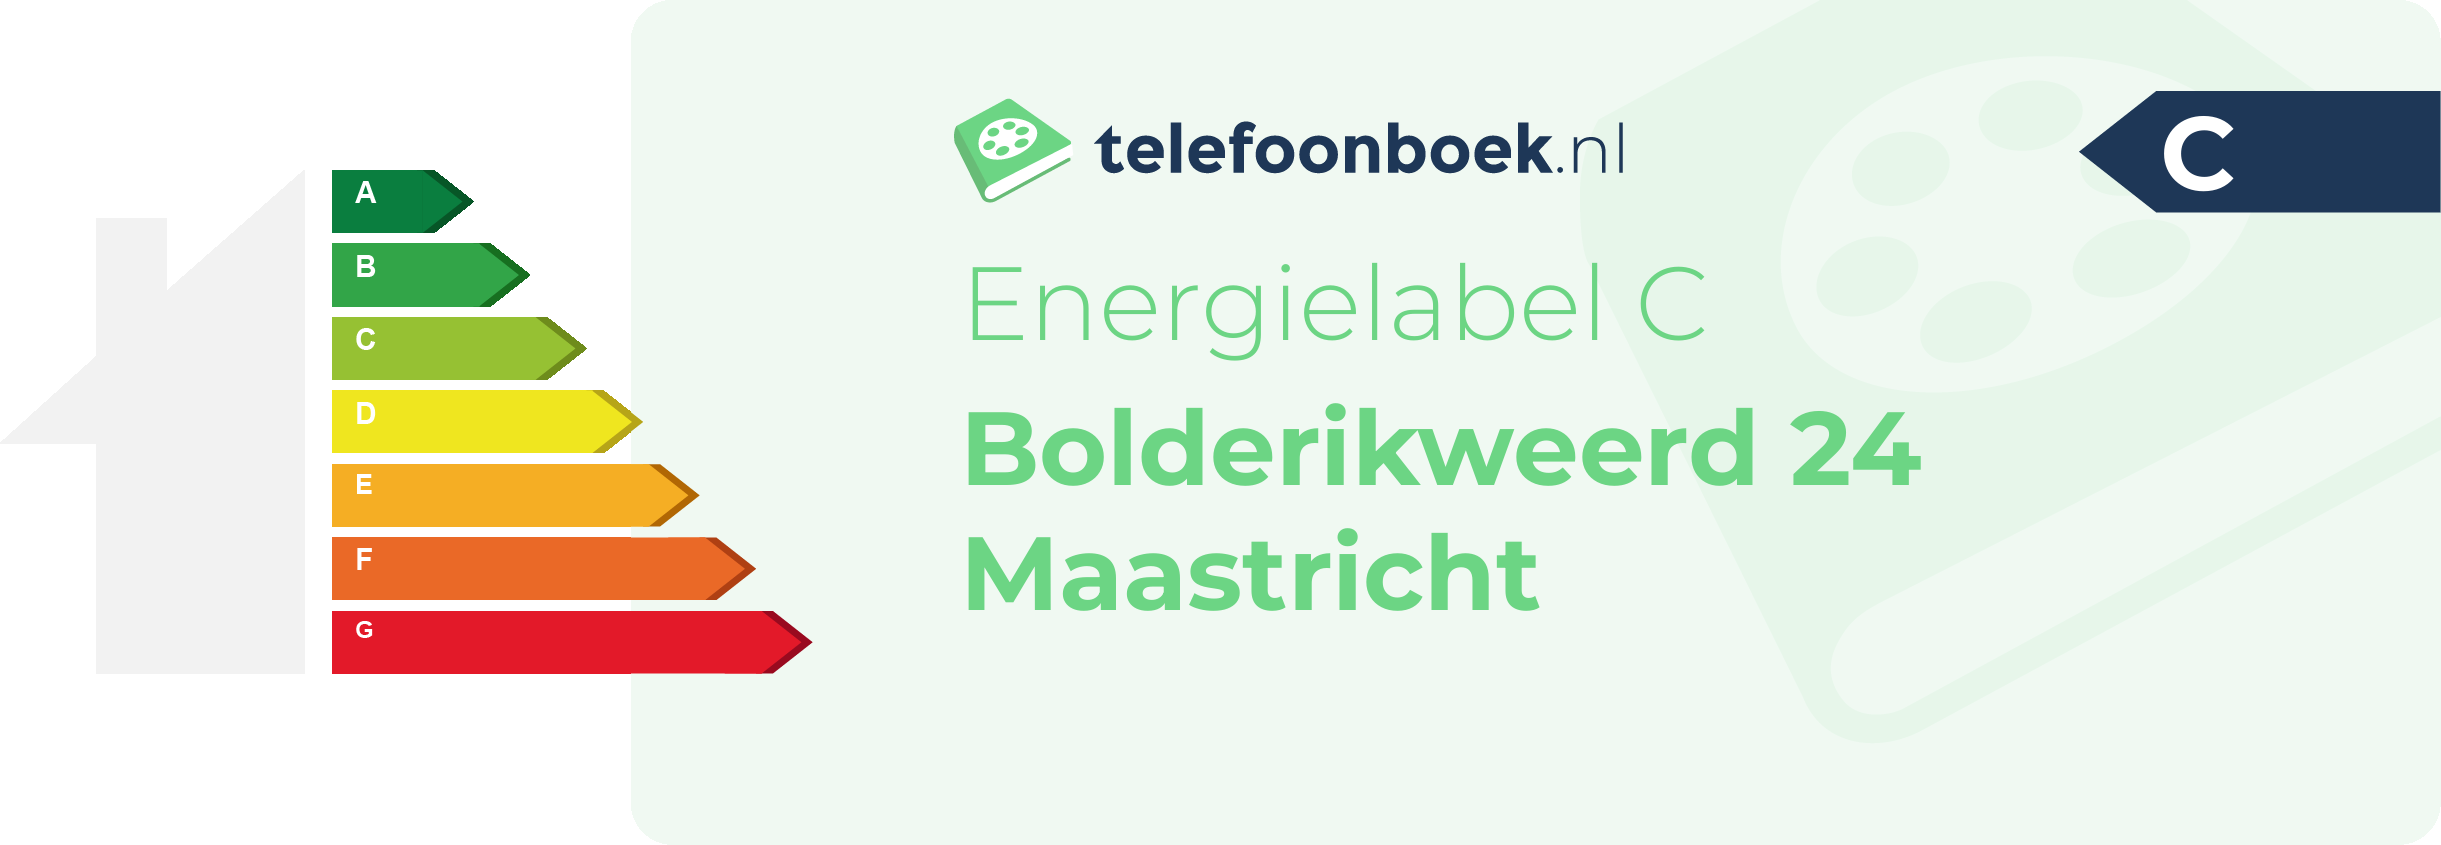 Energielabel Bolderikweerd 24 Maastricht